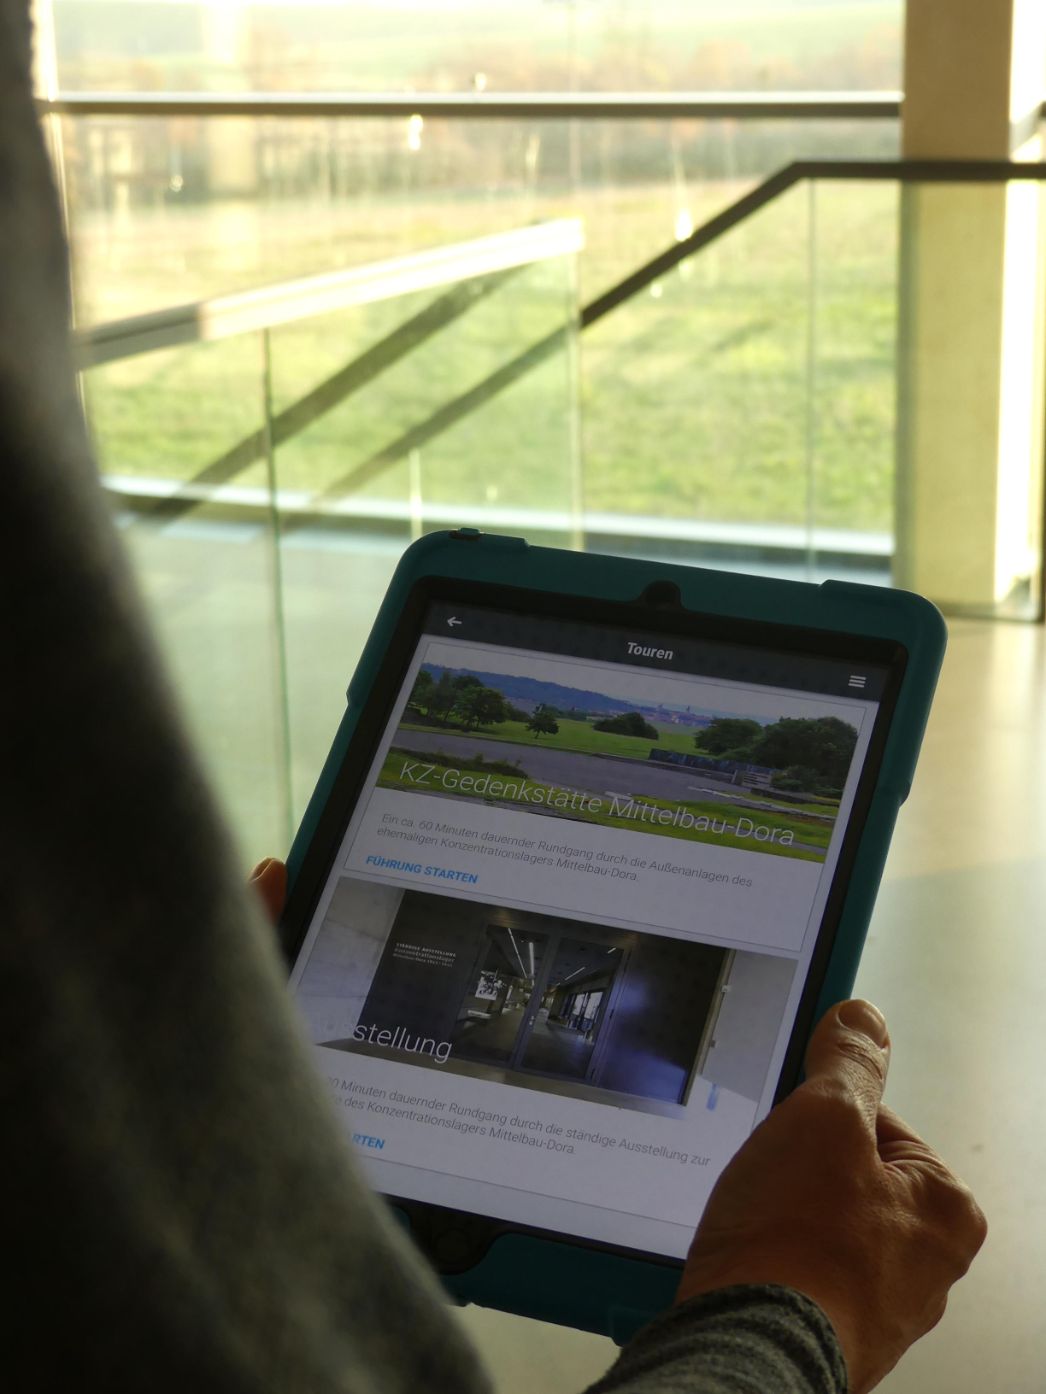 Eine Person hält ein Tablet in der Hand. Auf dem Bildschirm sieht man die geöffnete App der Daueraustellung der KZ-Gedenkstätte Mittelbau-Dora.